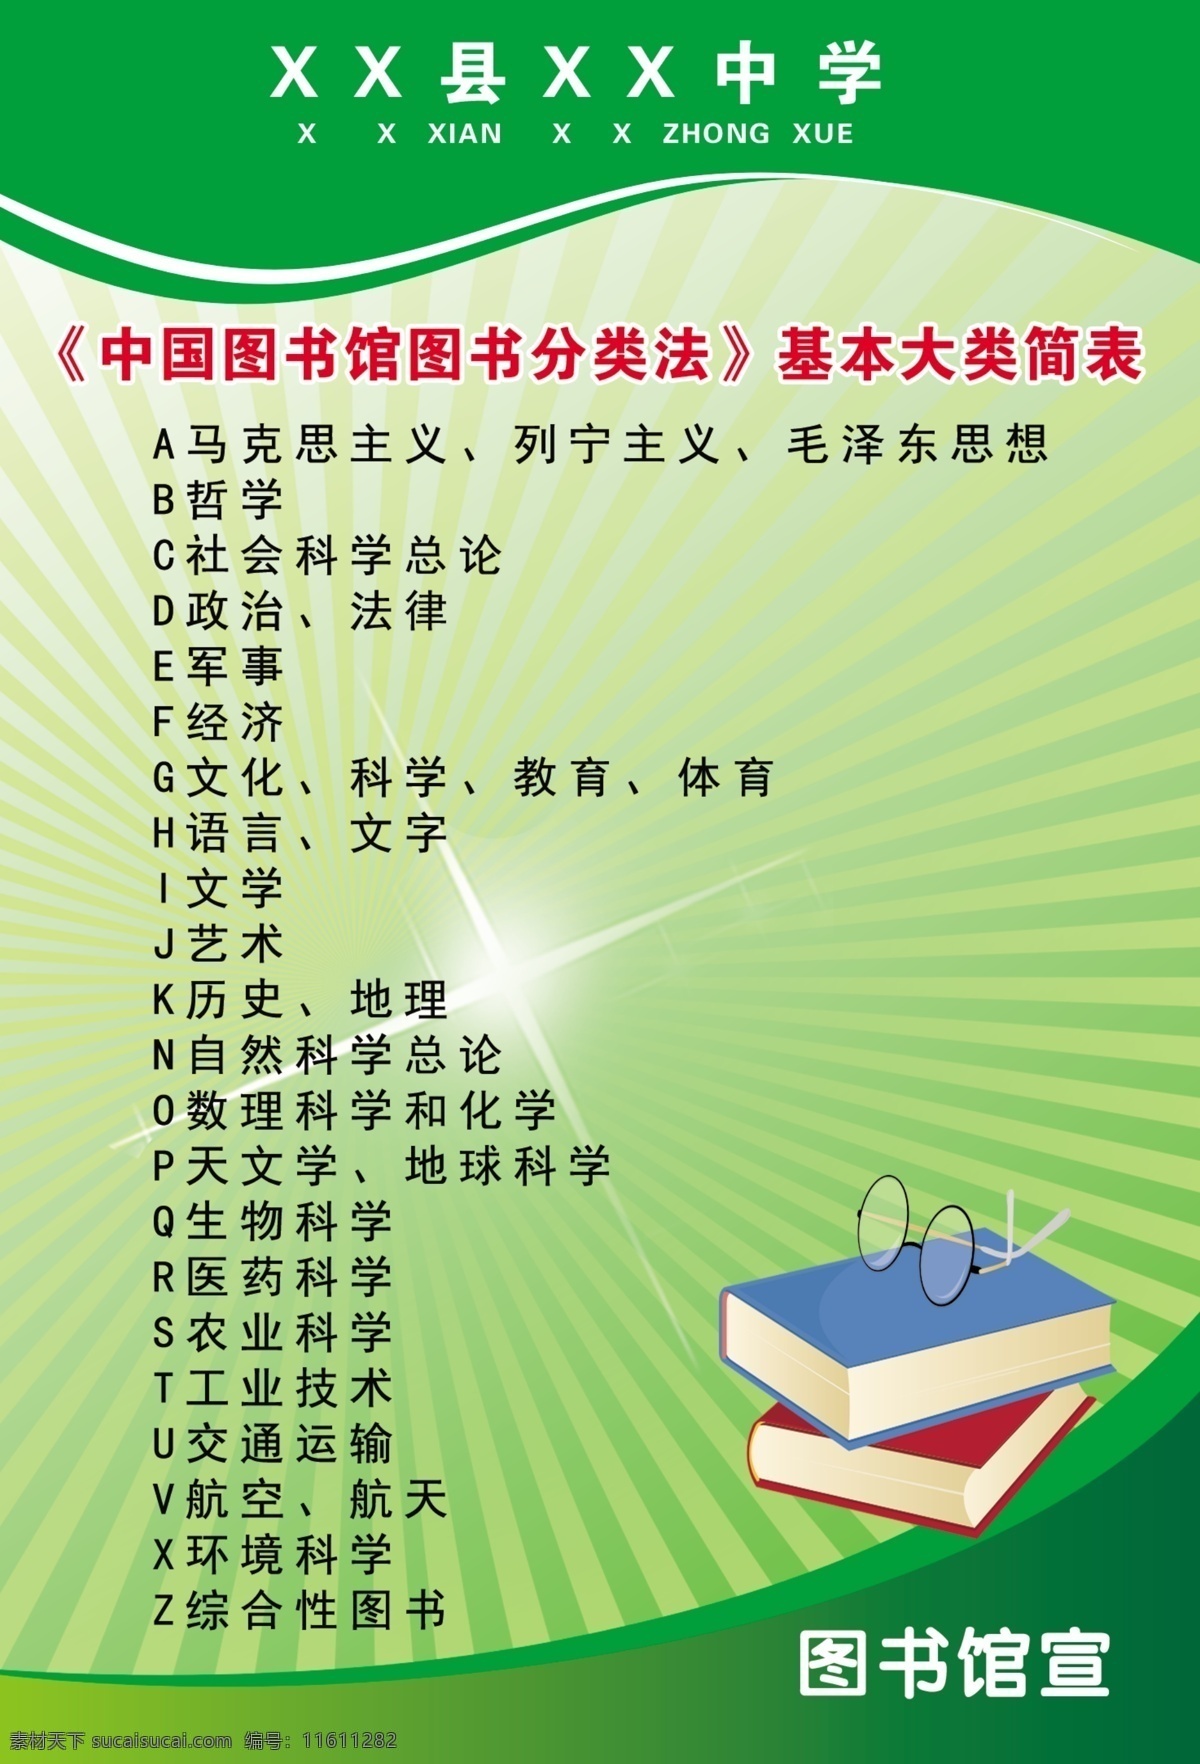 中国 图书馆 图书 分类法 基本 大类 简 分层图 图书分类法 书 眼镜 学校展板 绿色展板